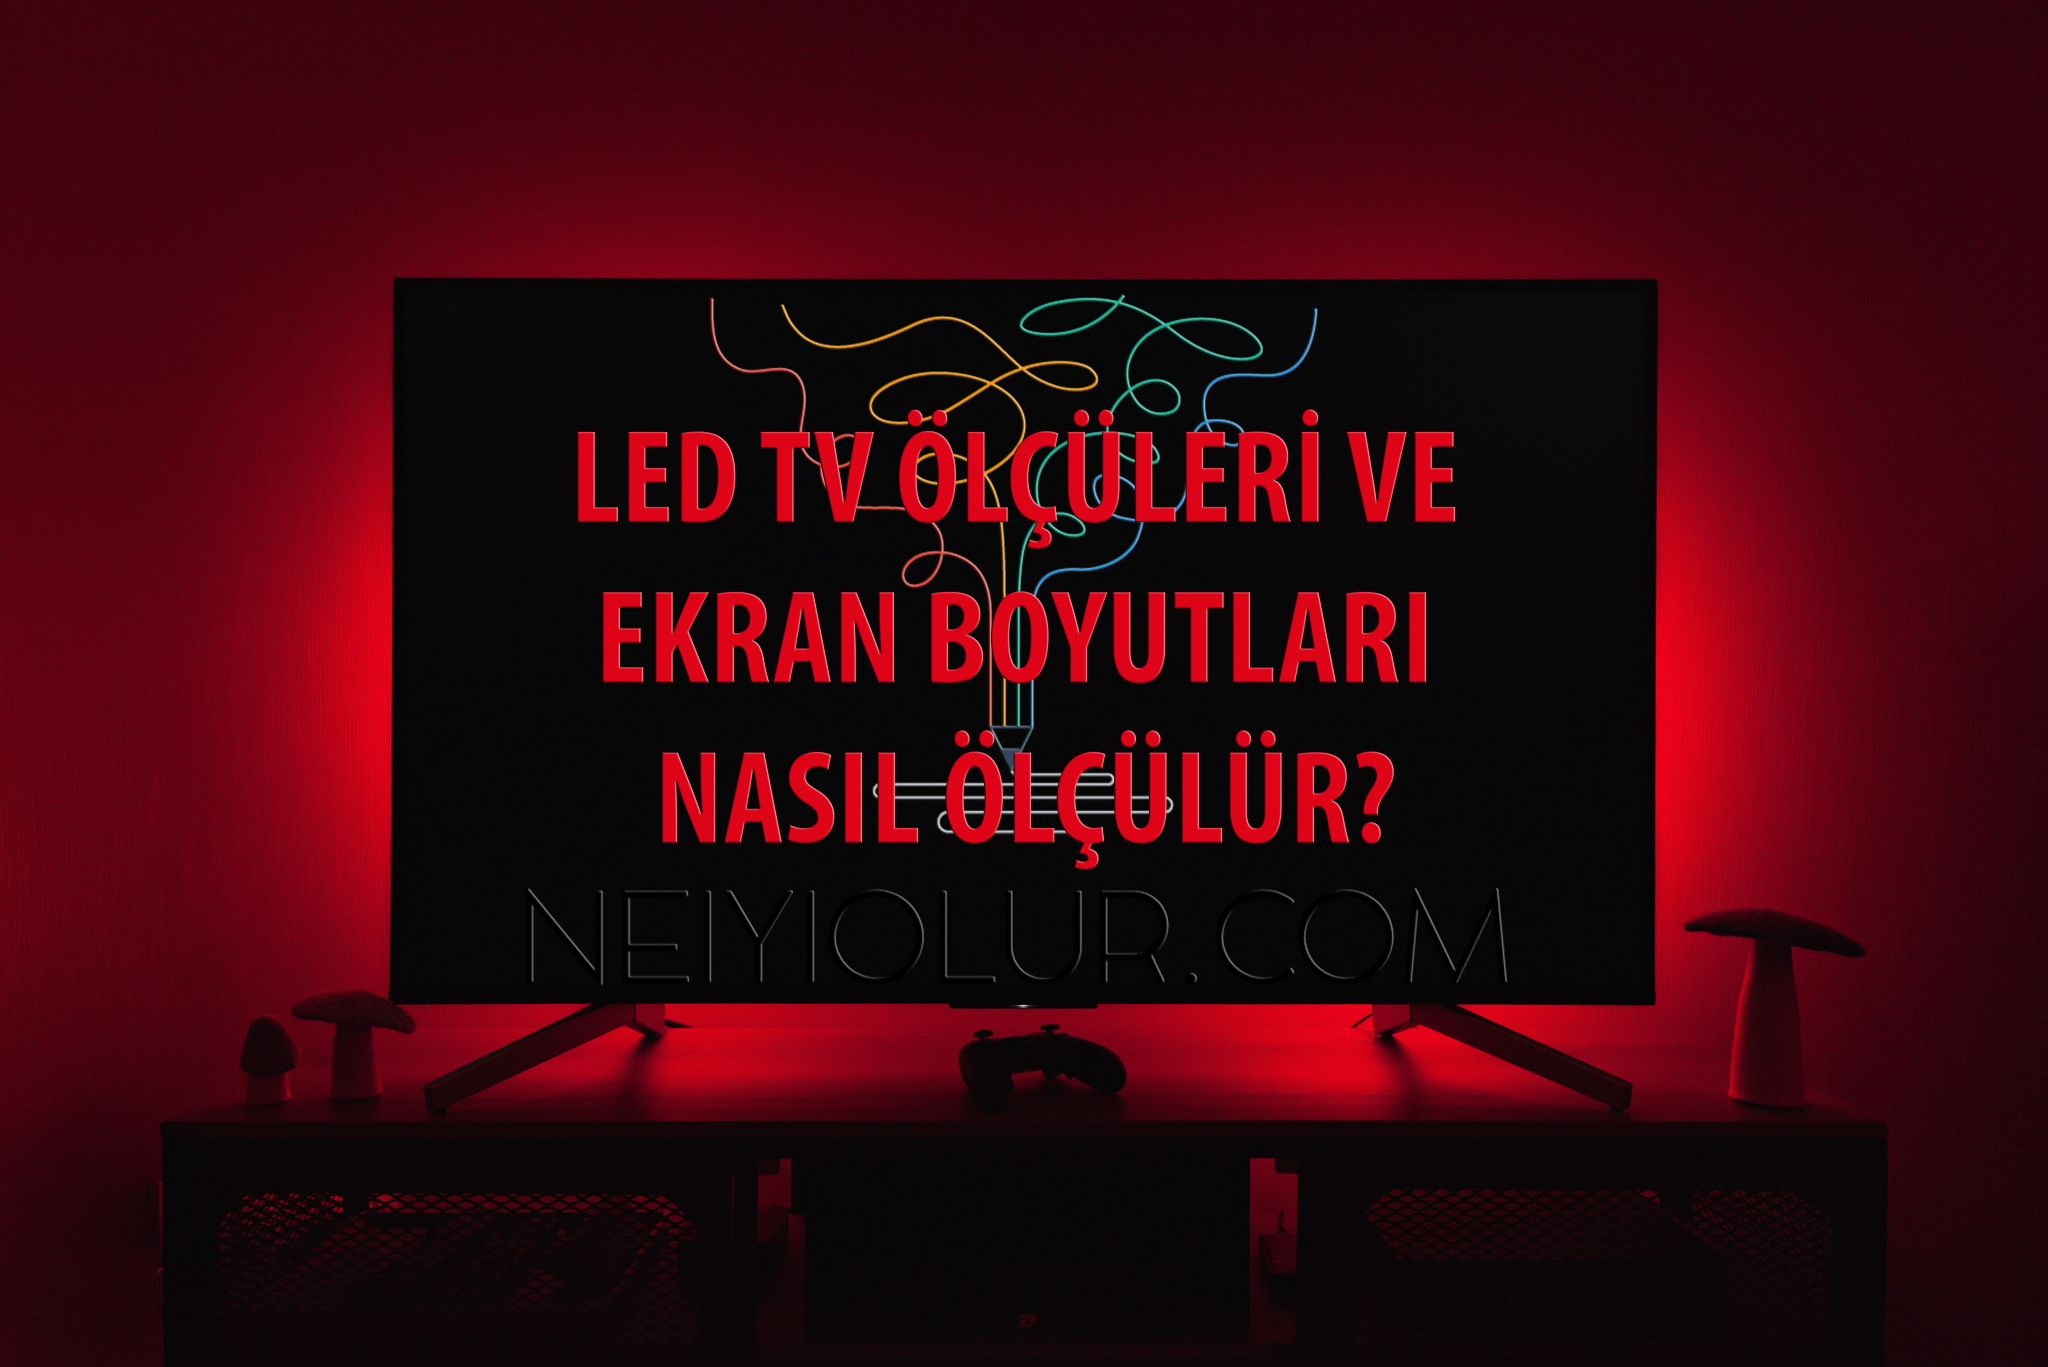 LED TV Ölçüleri ve Ekran Boyutları Nasıl Ölçülür?